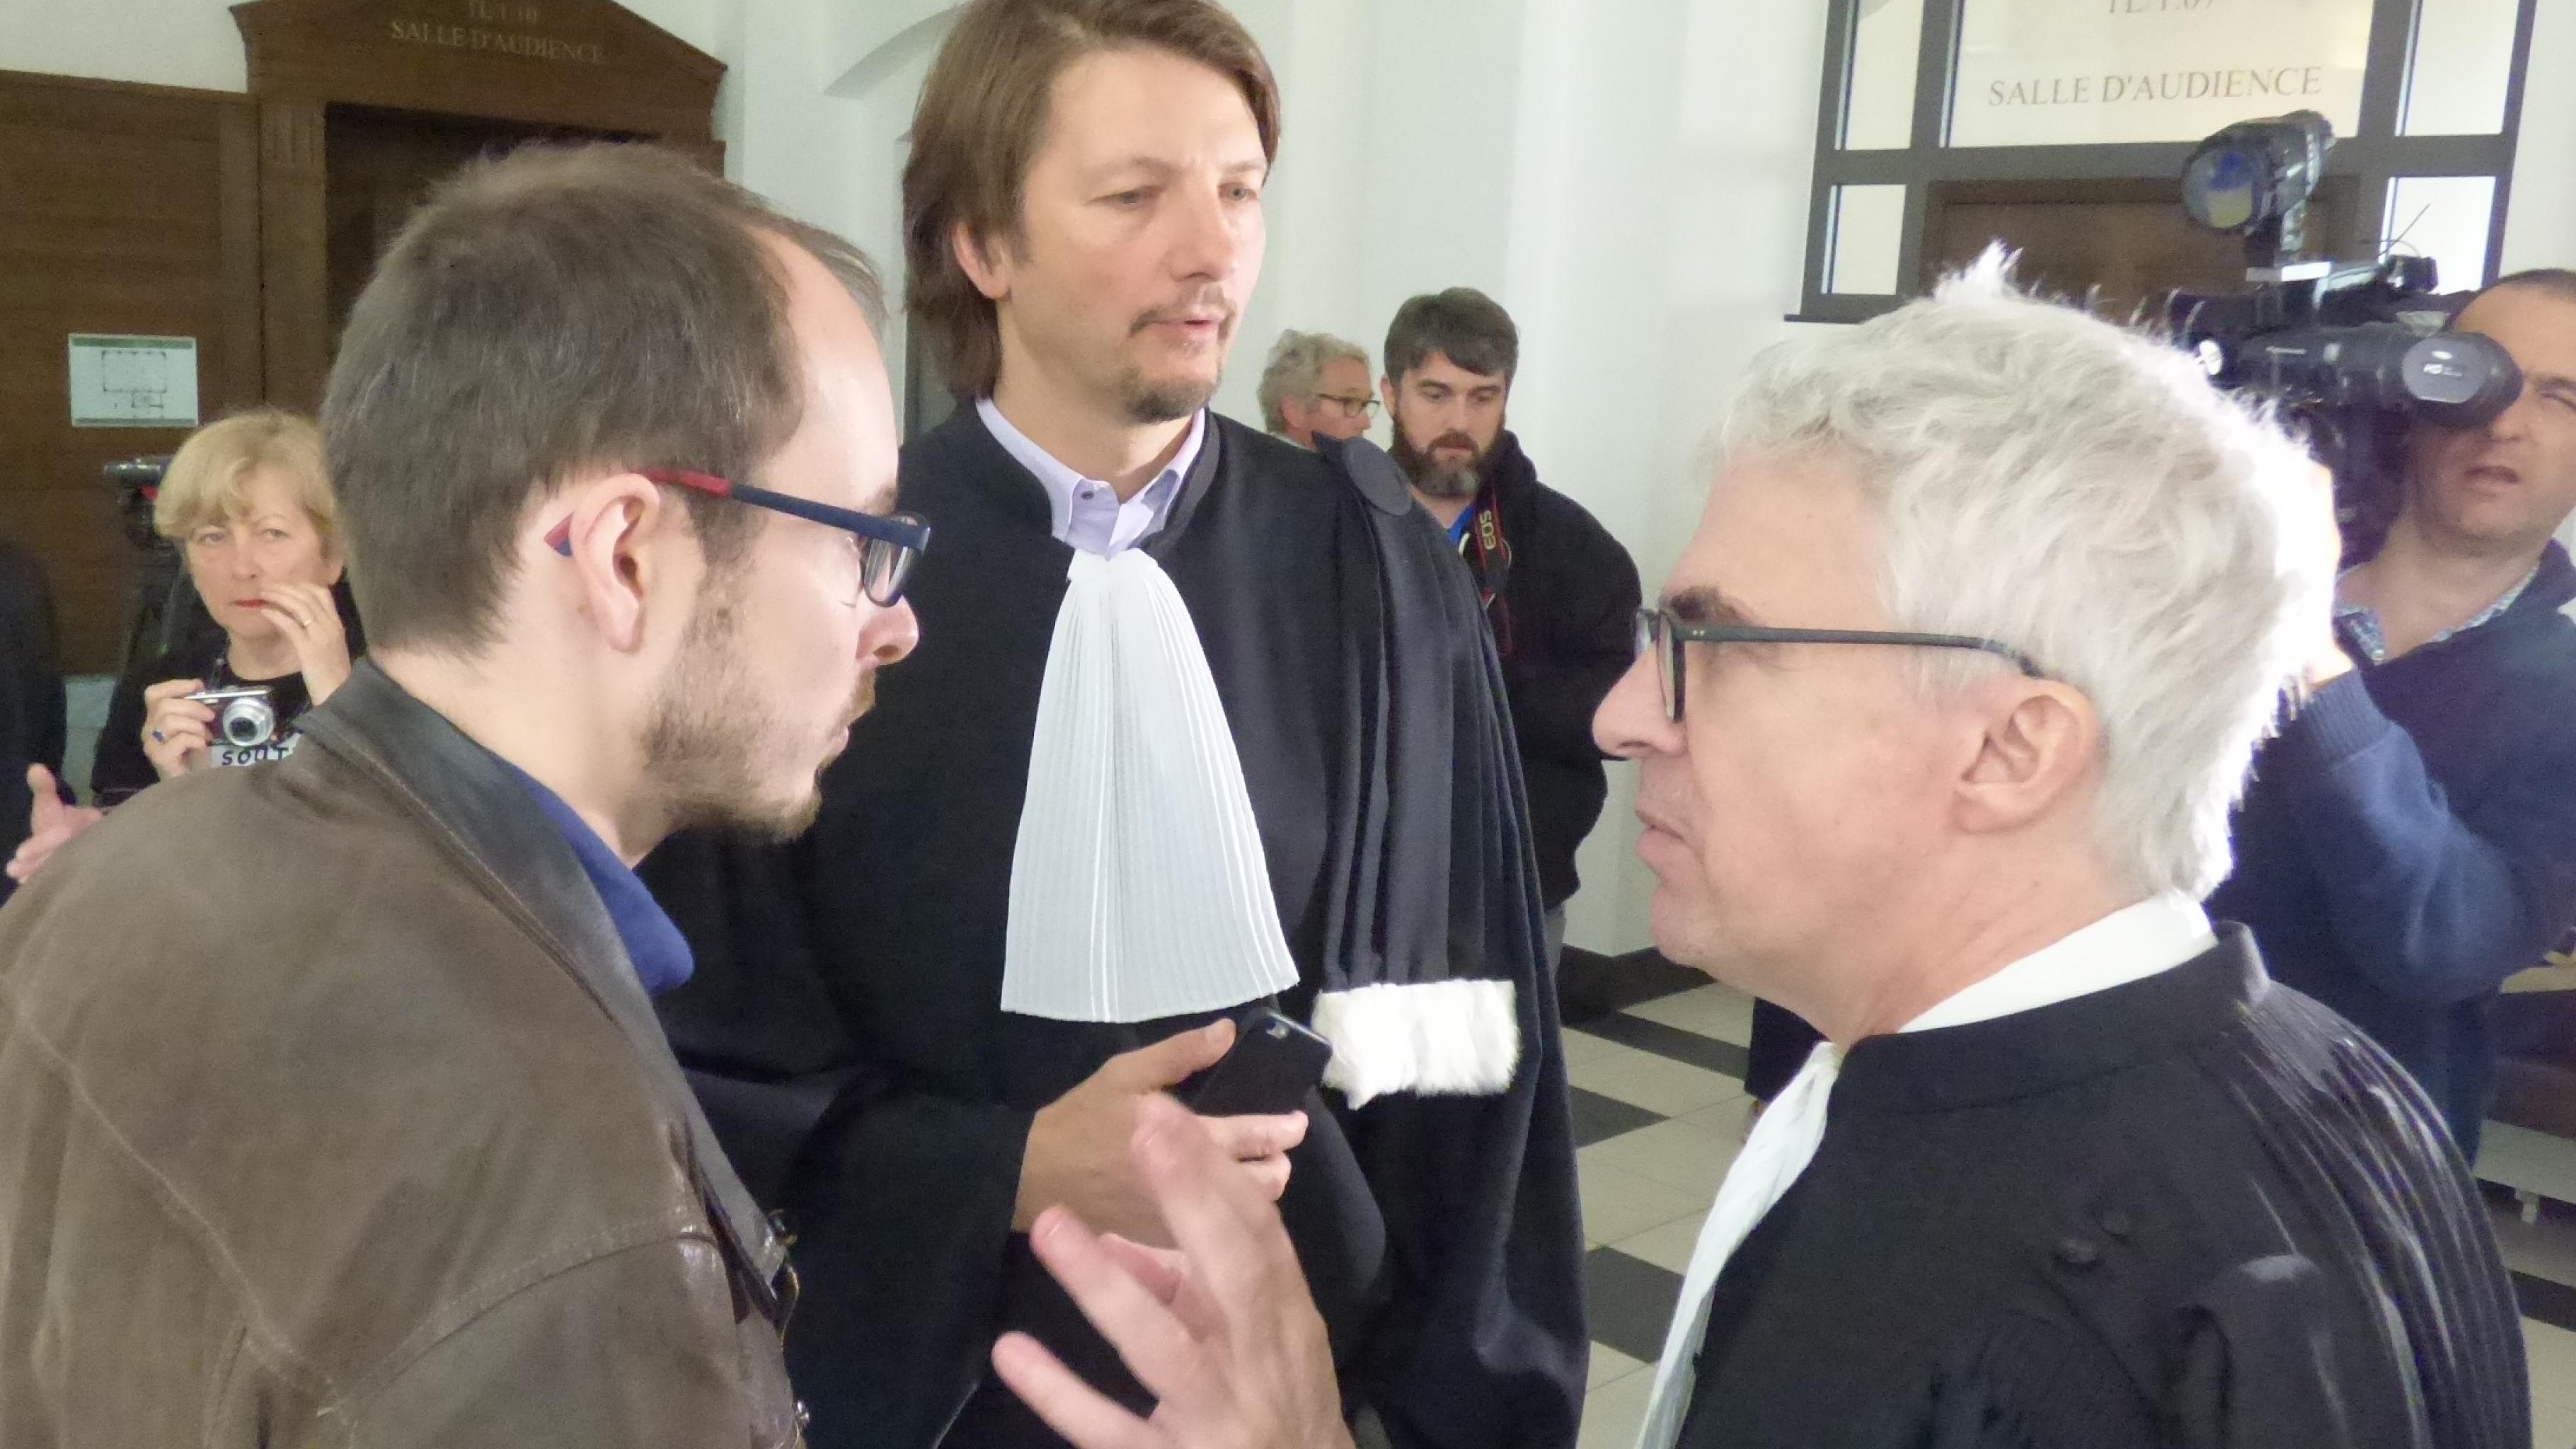 Antoine Deltour im Gespräch mit seinen Anwälten